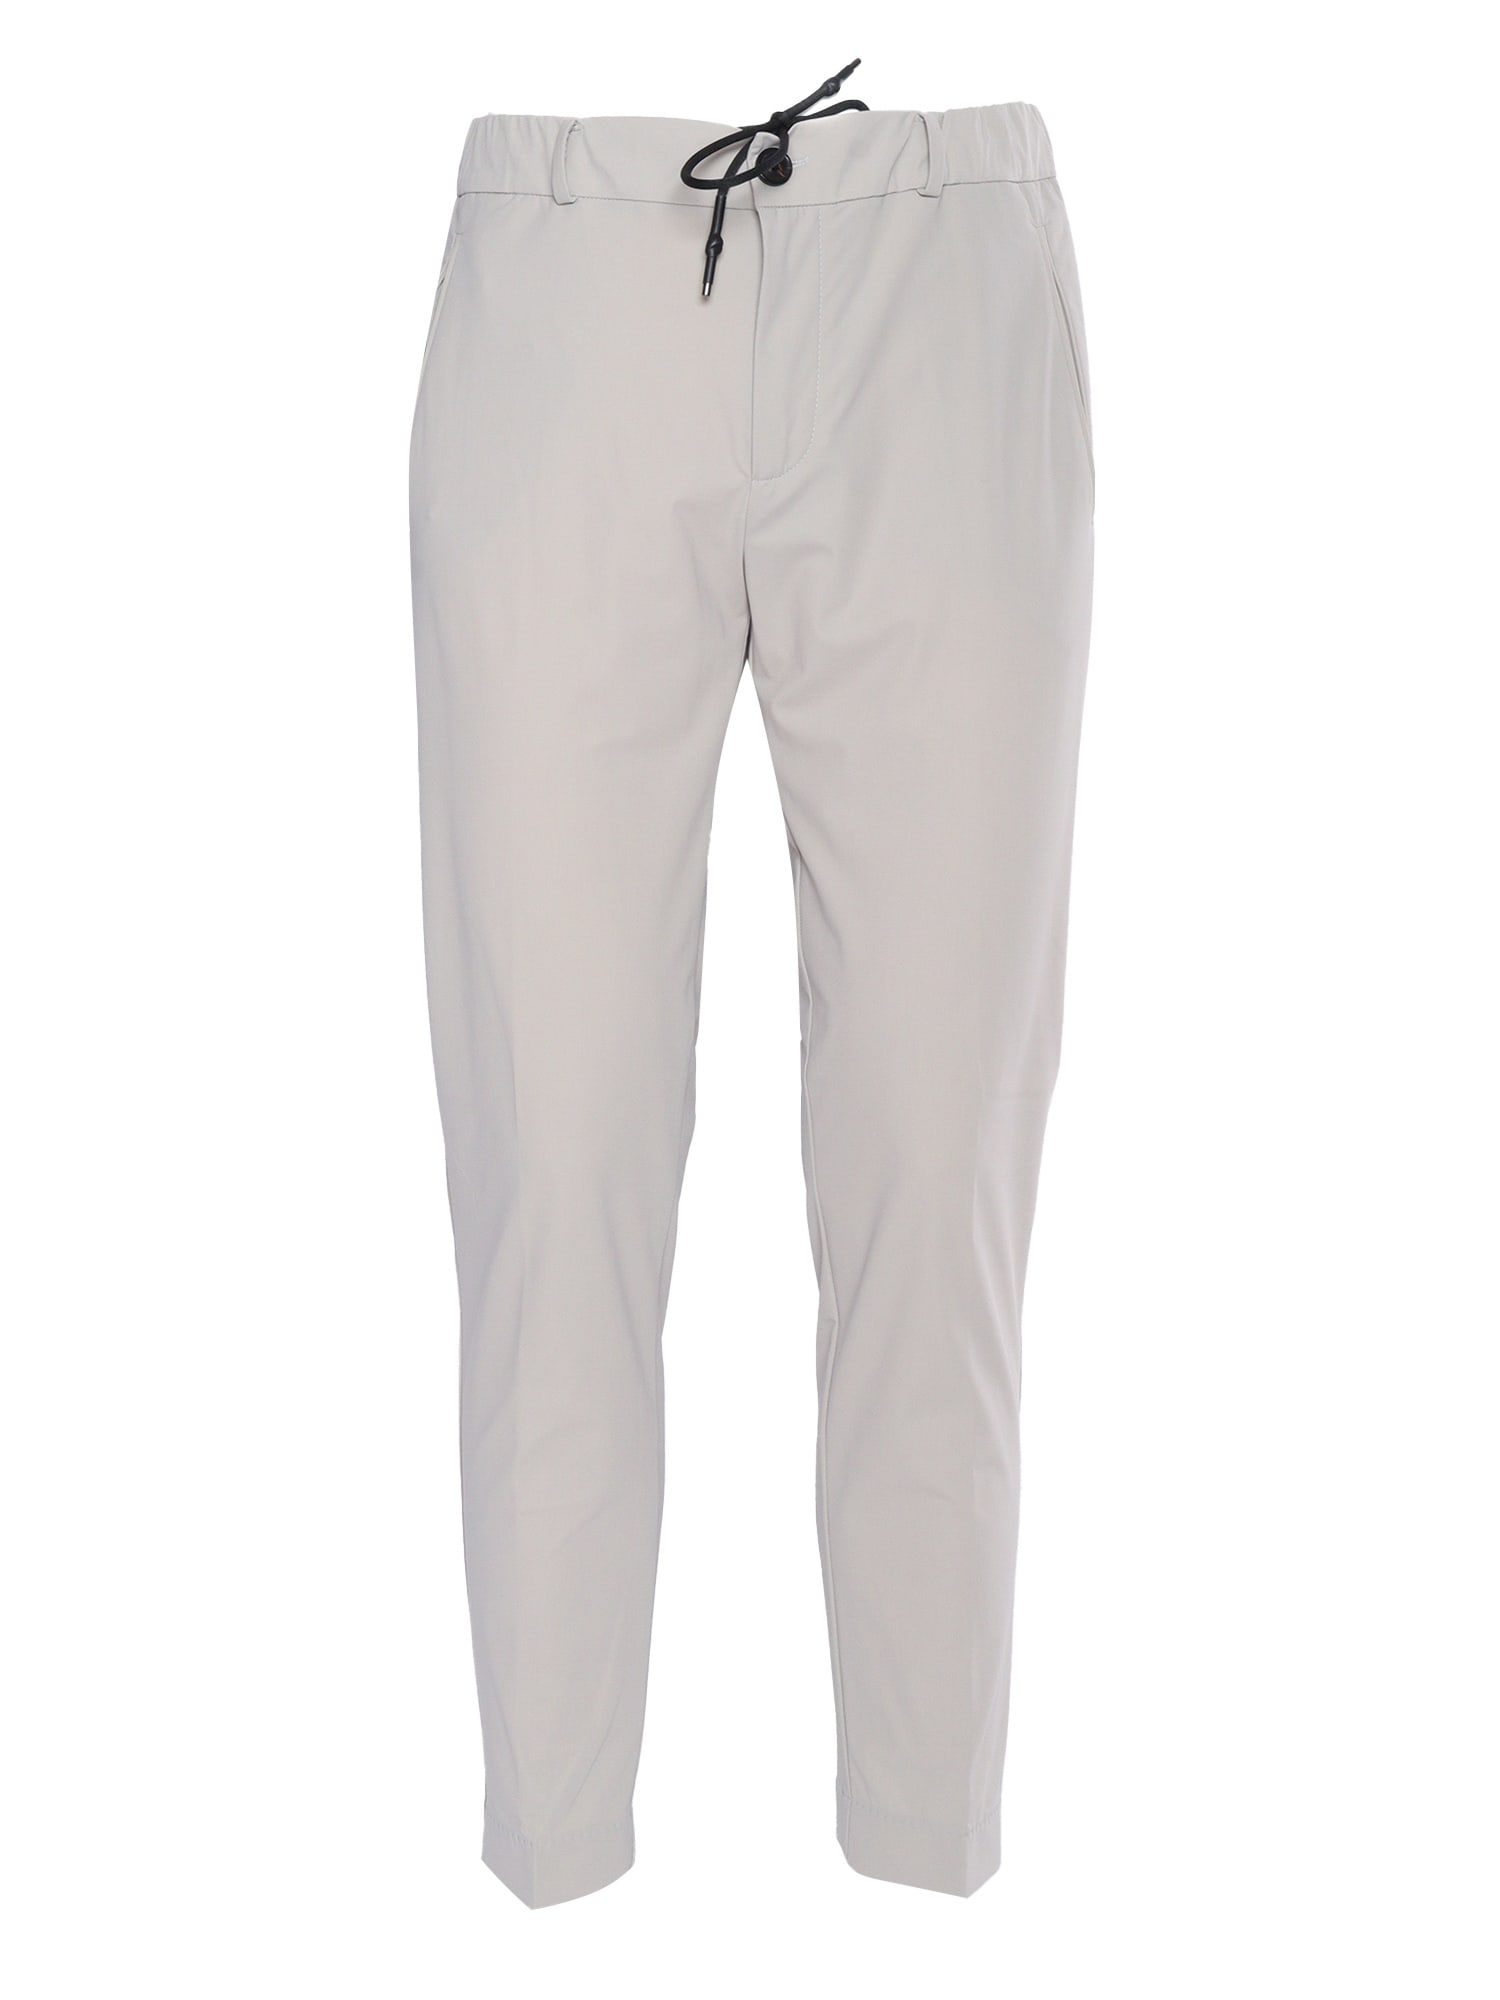 Rrd - Roberto Ricci Design Gray Chino Pants In White